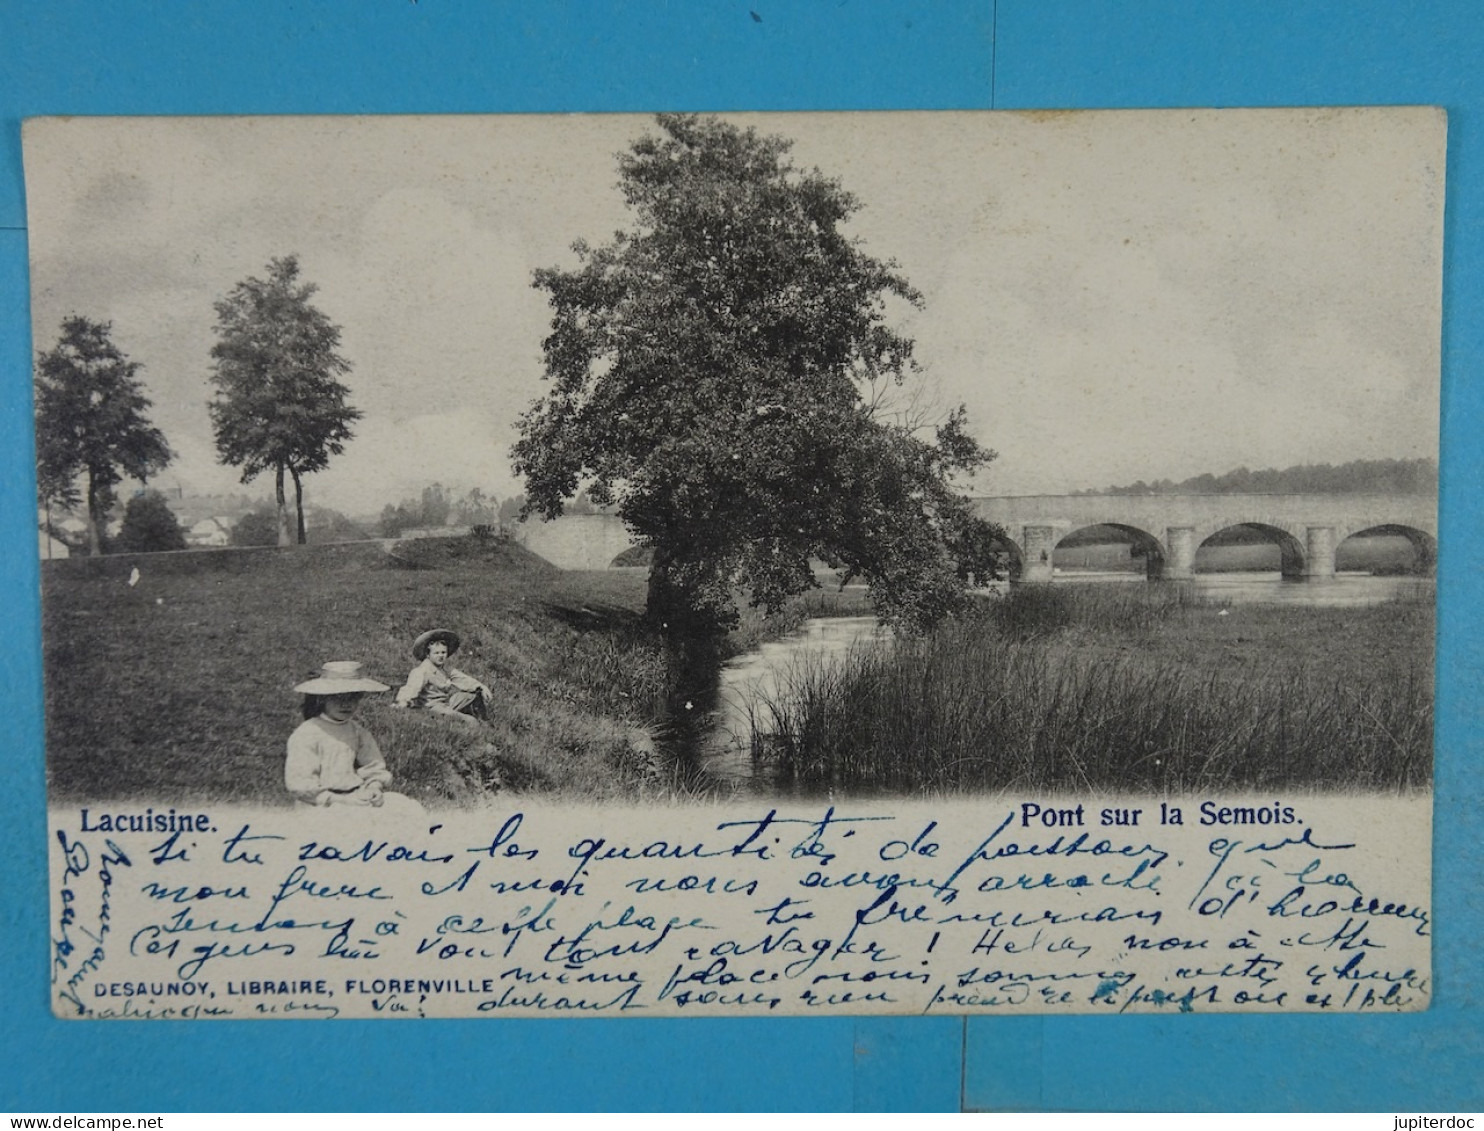 Lacuisine Pont Sur La Semois - Florenville